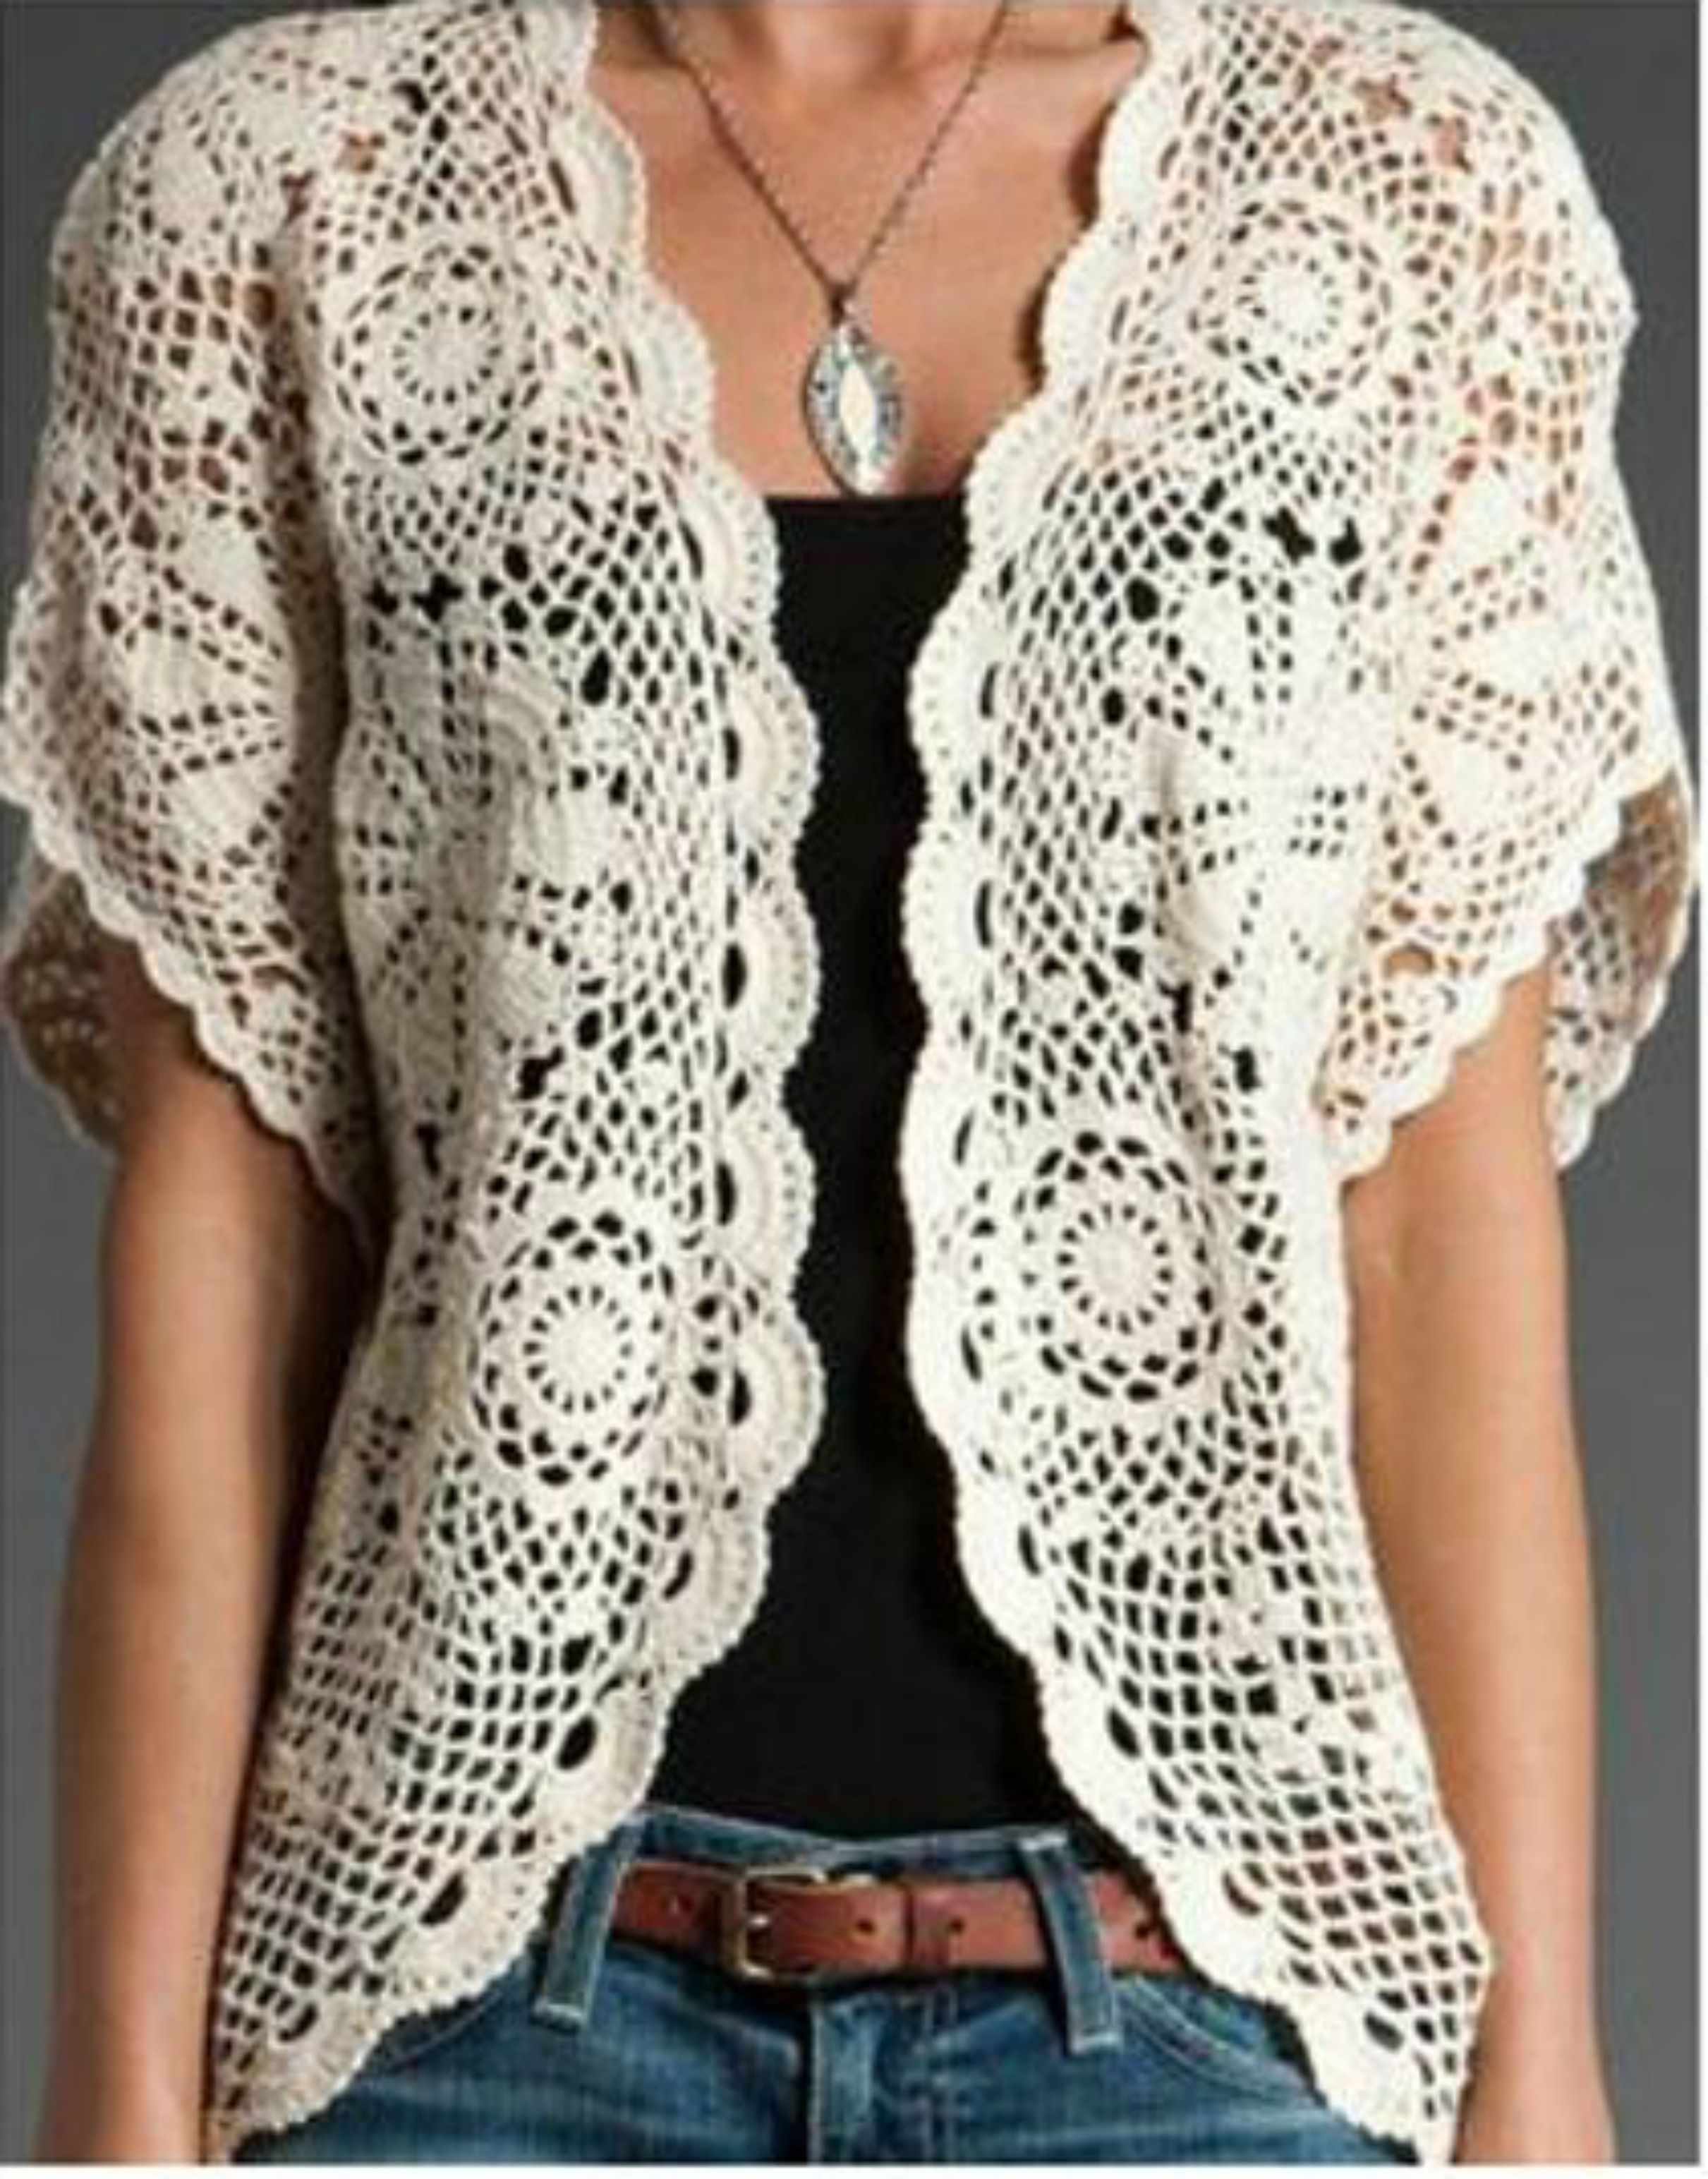 Crochet Sweater Vest Pattern Free Looking For A Crochet Sweater Vest Pattern For Your Next Project